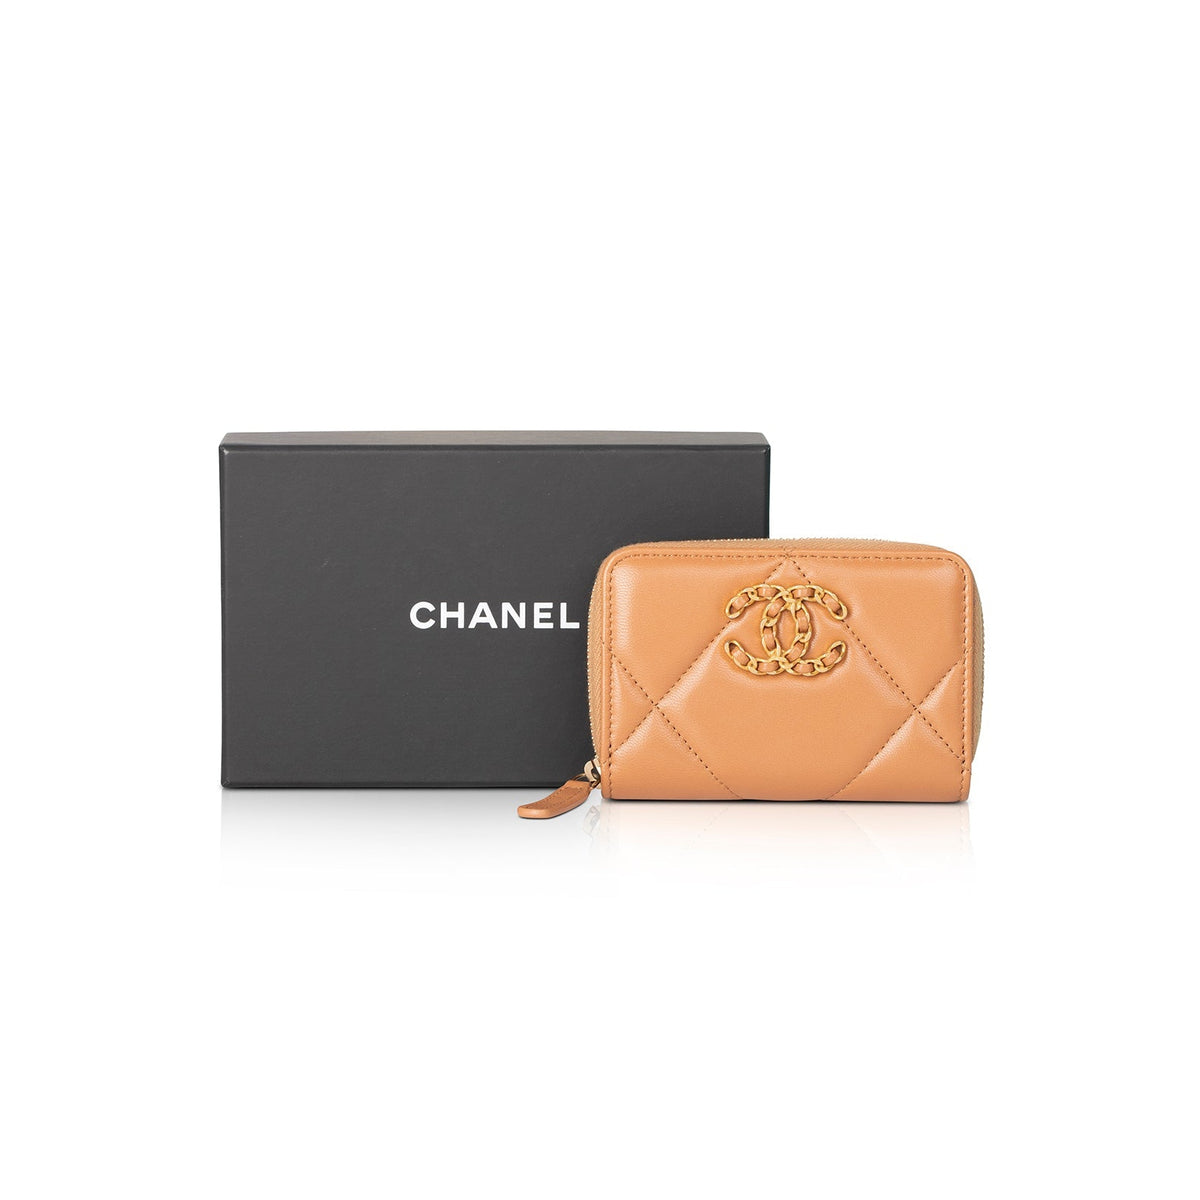 Chanel 2022 19 Zipped Coin Purse w/ Box & Receipt